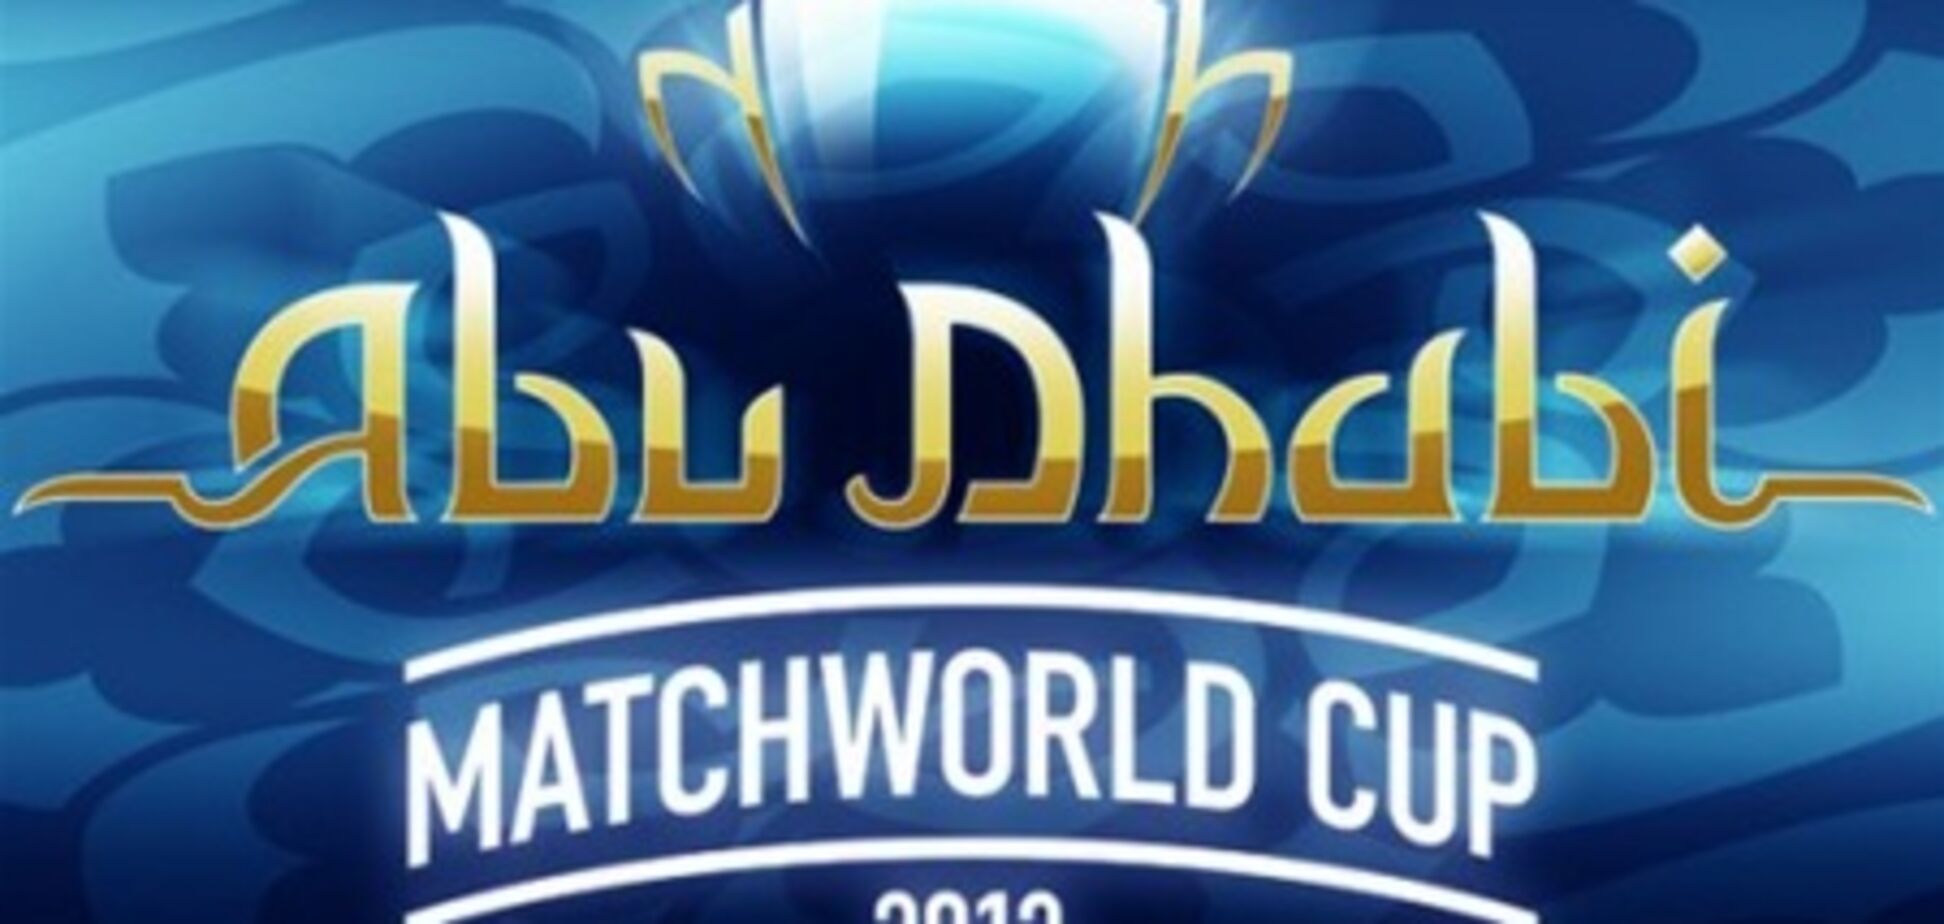 Стало известно расписание матчей 'Шахтера' на Matchworld Cup-2013